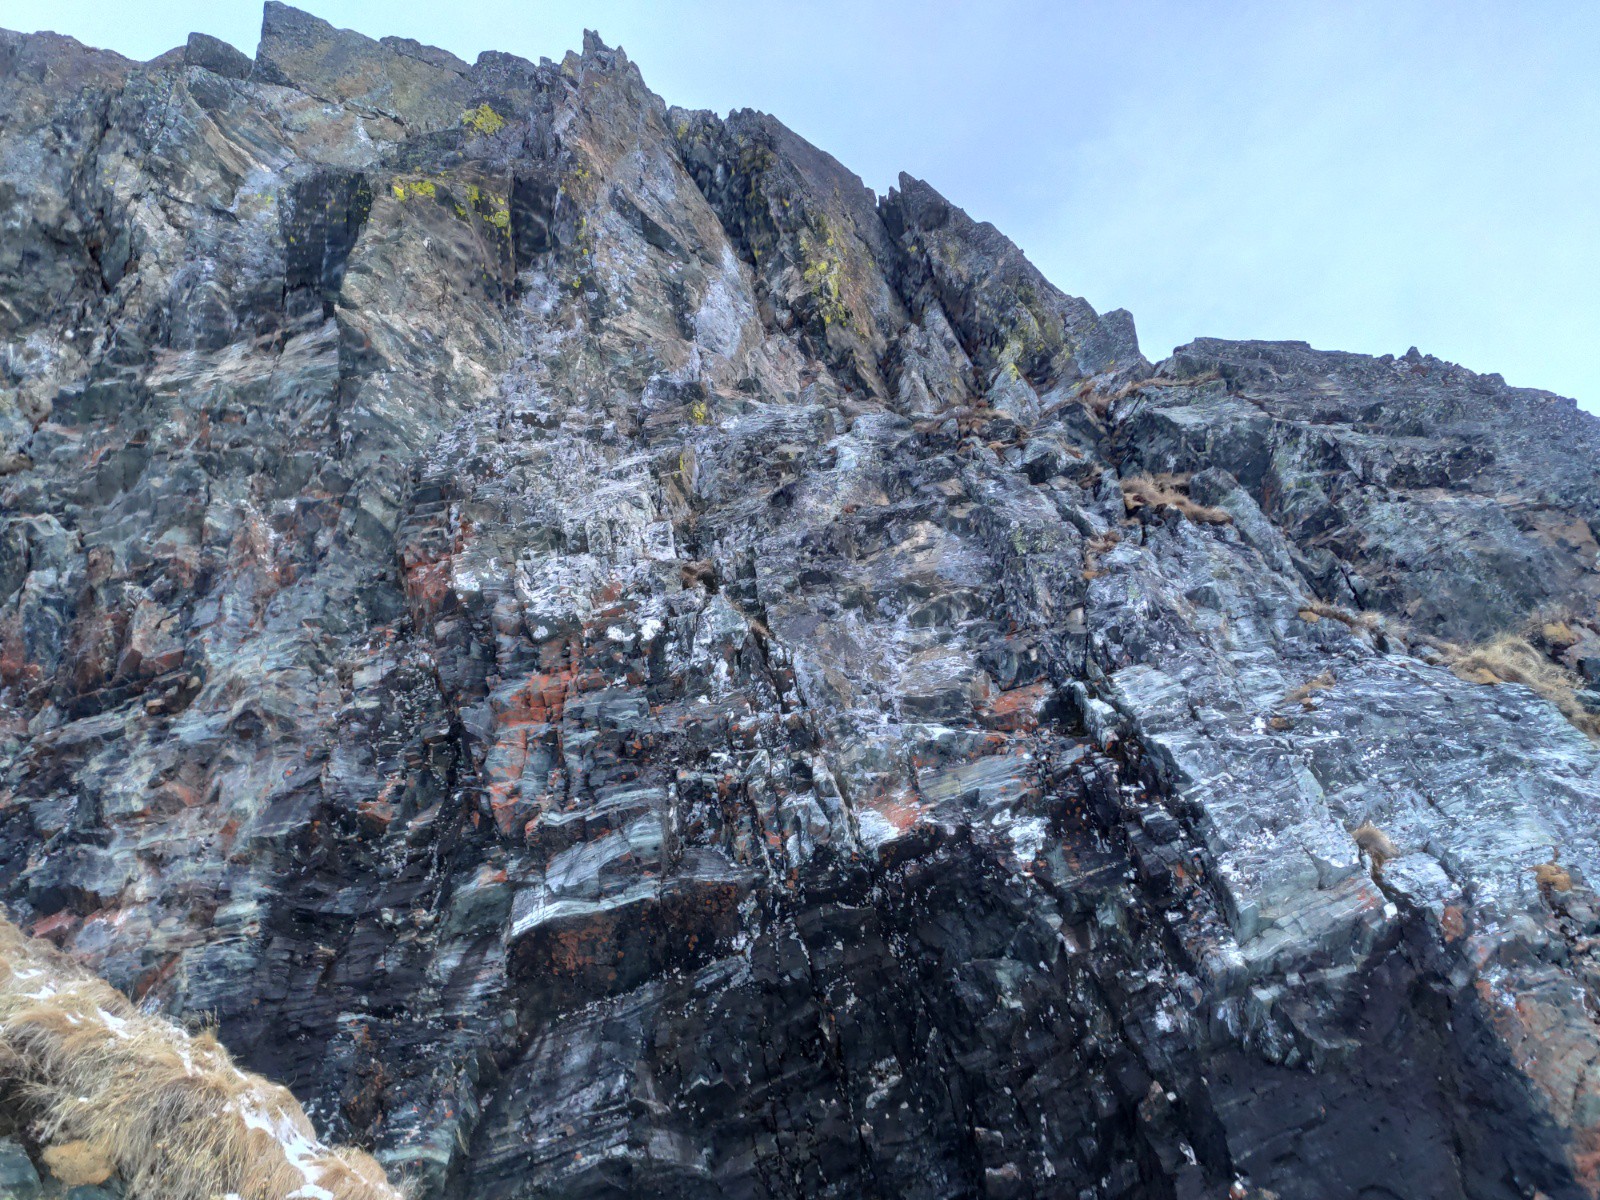 La falaise a l'air riche en diverses minéraux, aussi noir, çà se voit pas souvent.